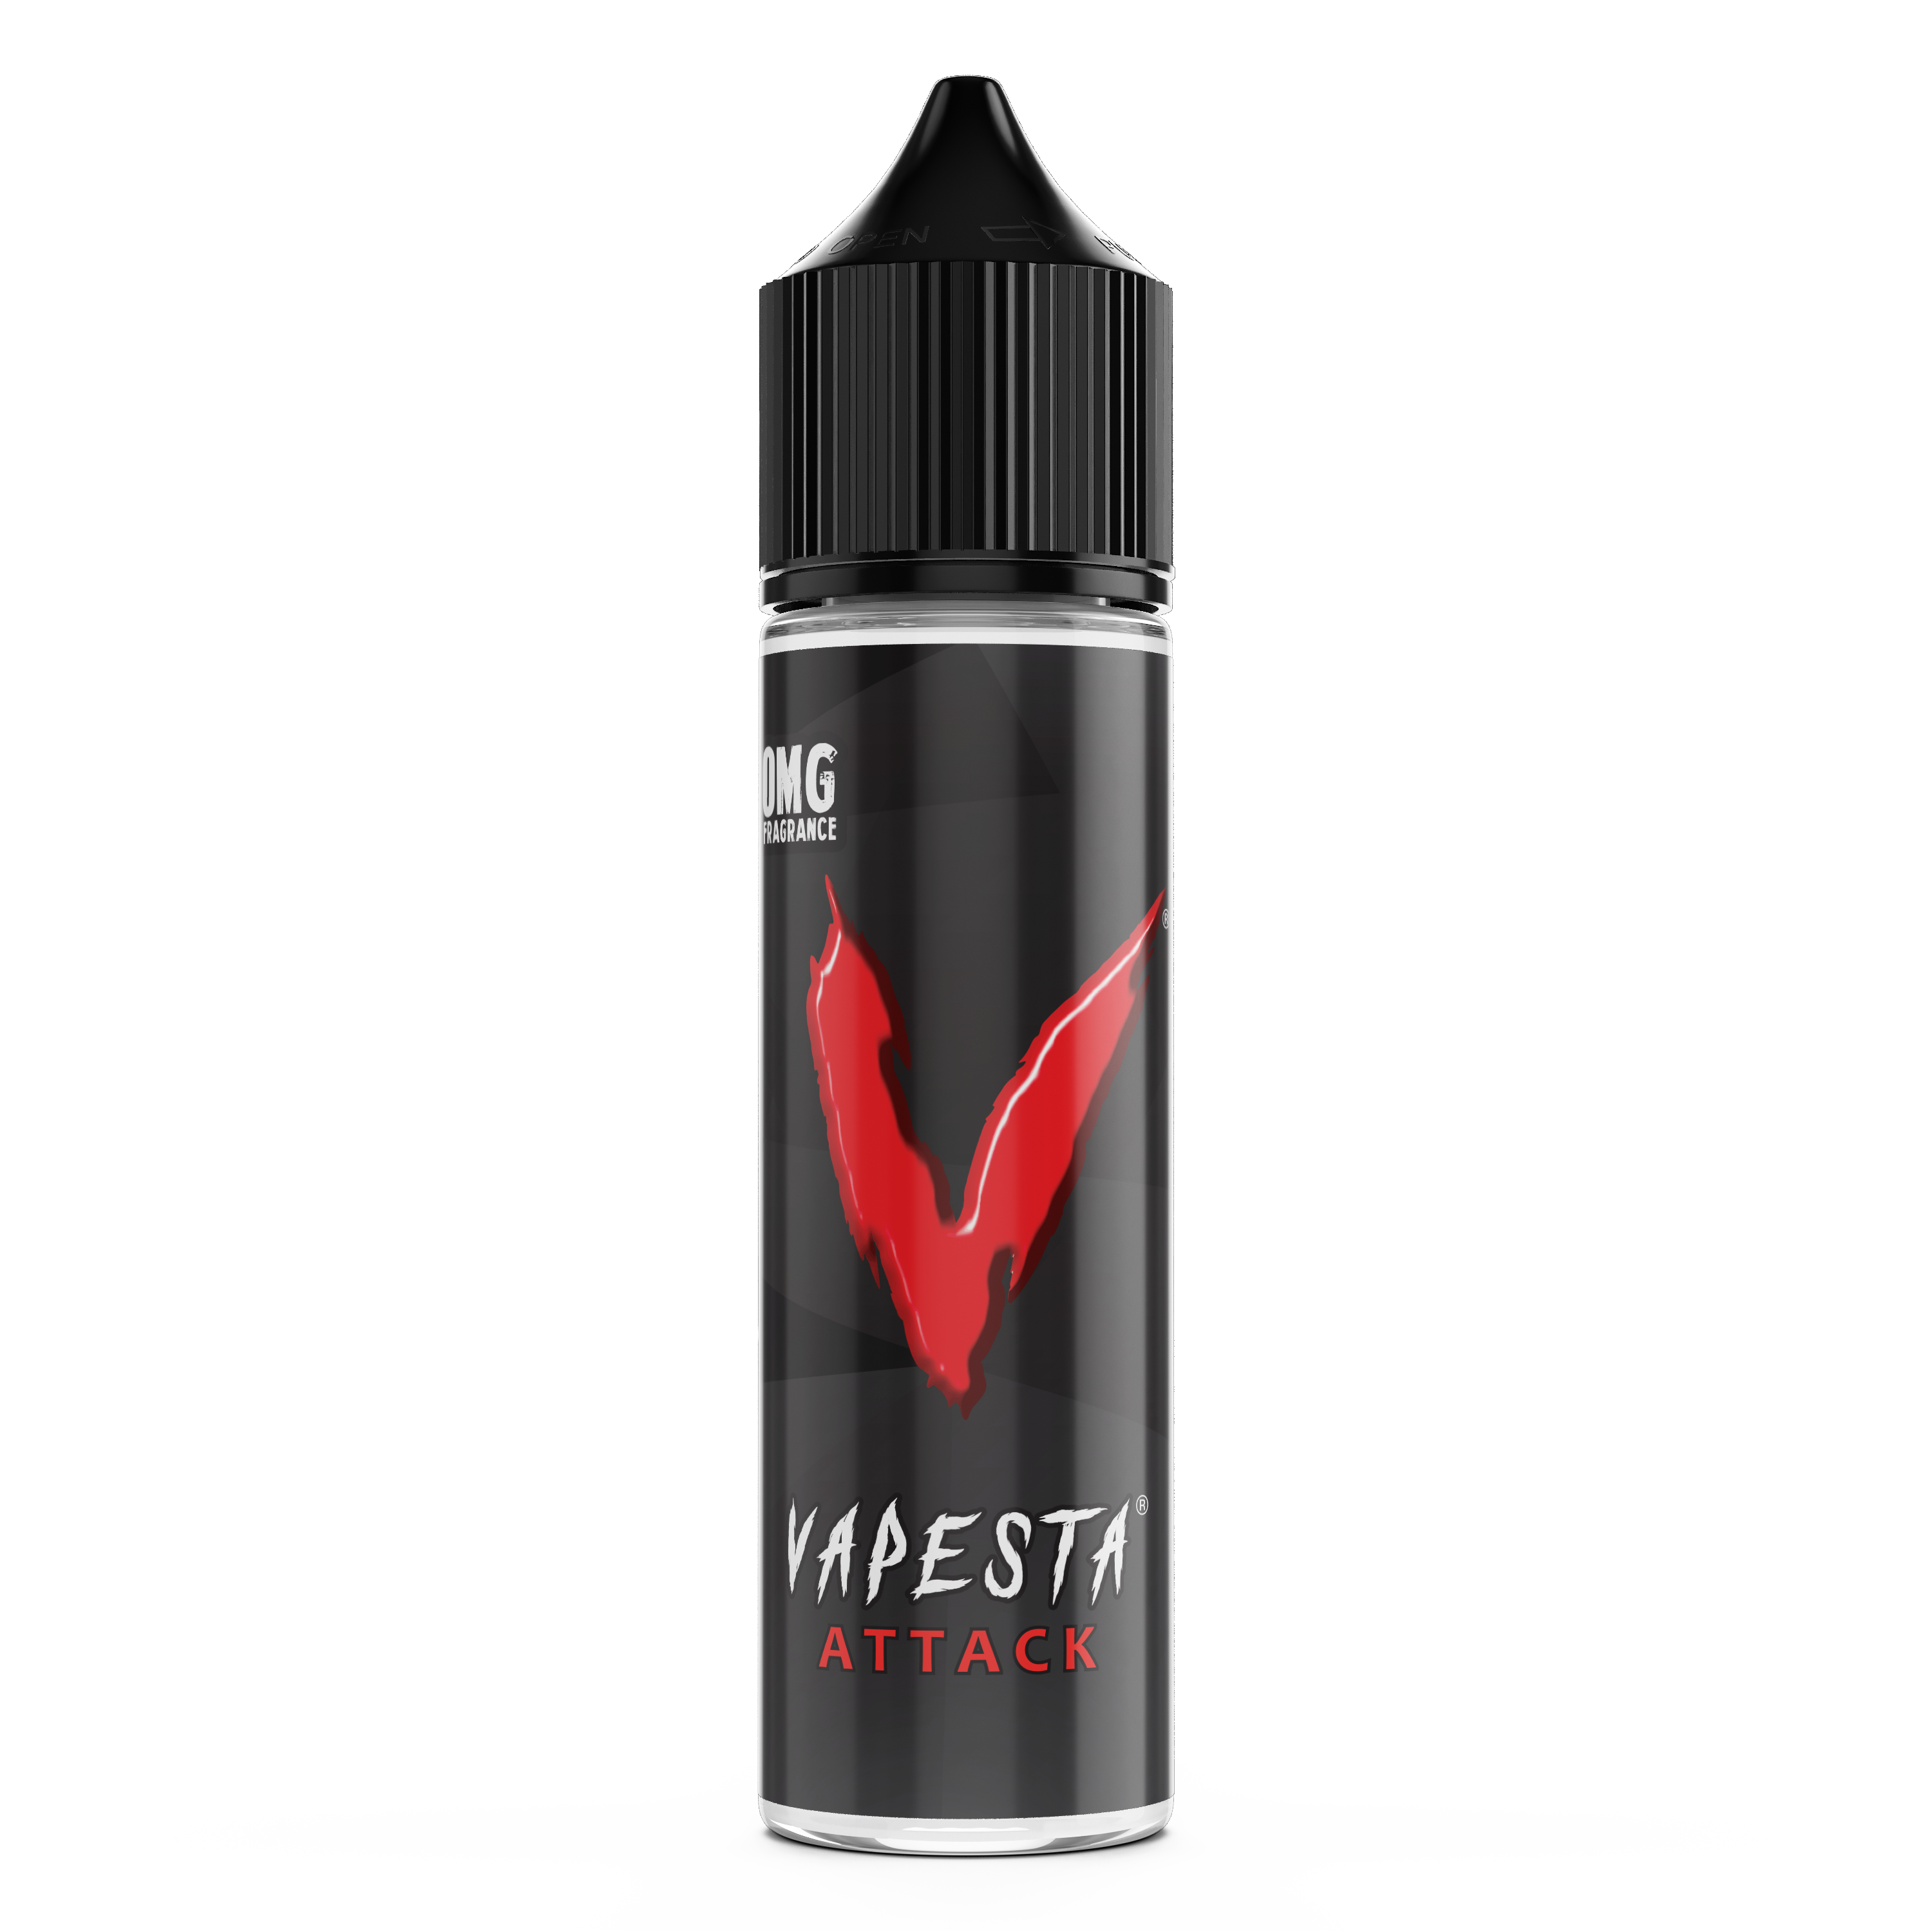 Vapesta Attack E-Liquid by Cherish Vapor 50ml Short Fill